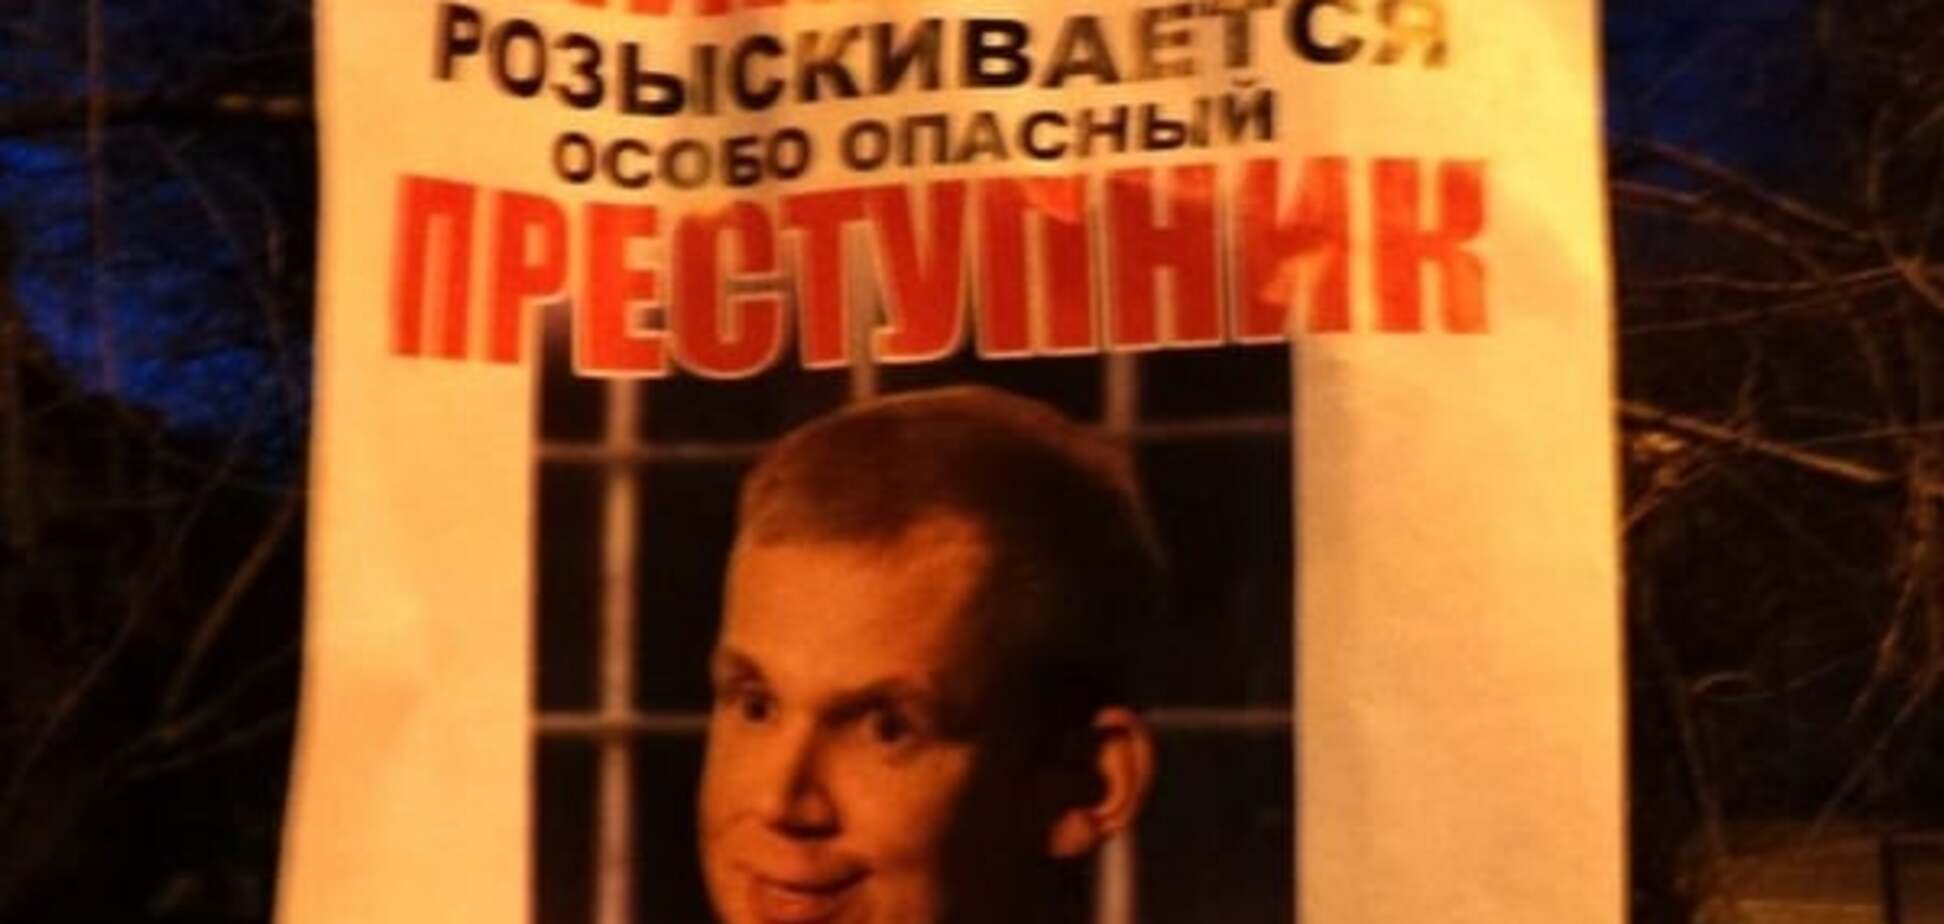 В Донецке развесили листовки о розыске 'хитрого и жадного' Курченко: фотофакт